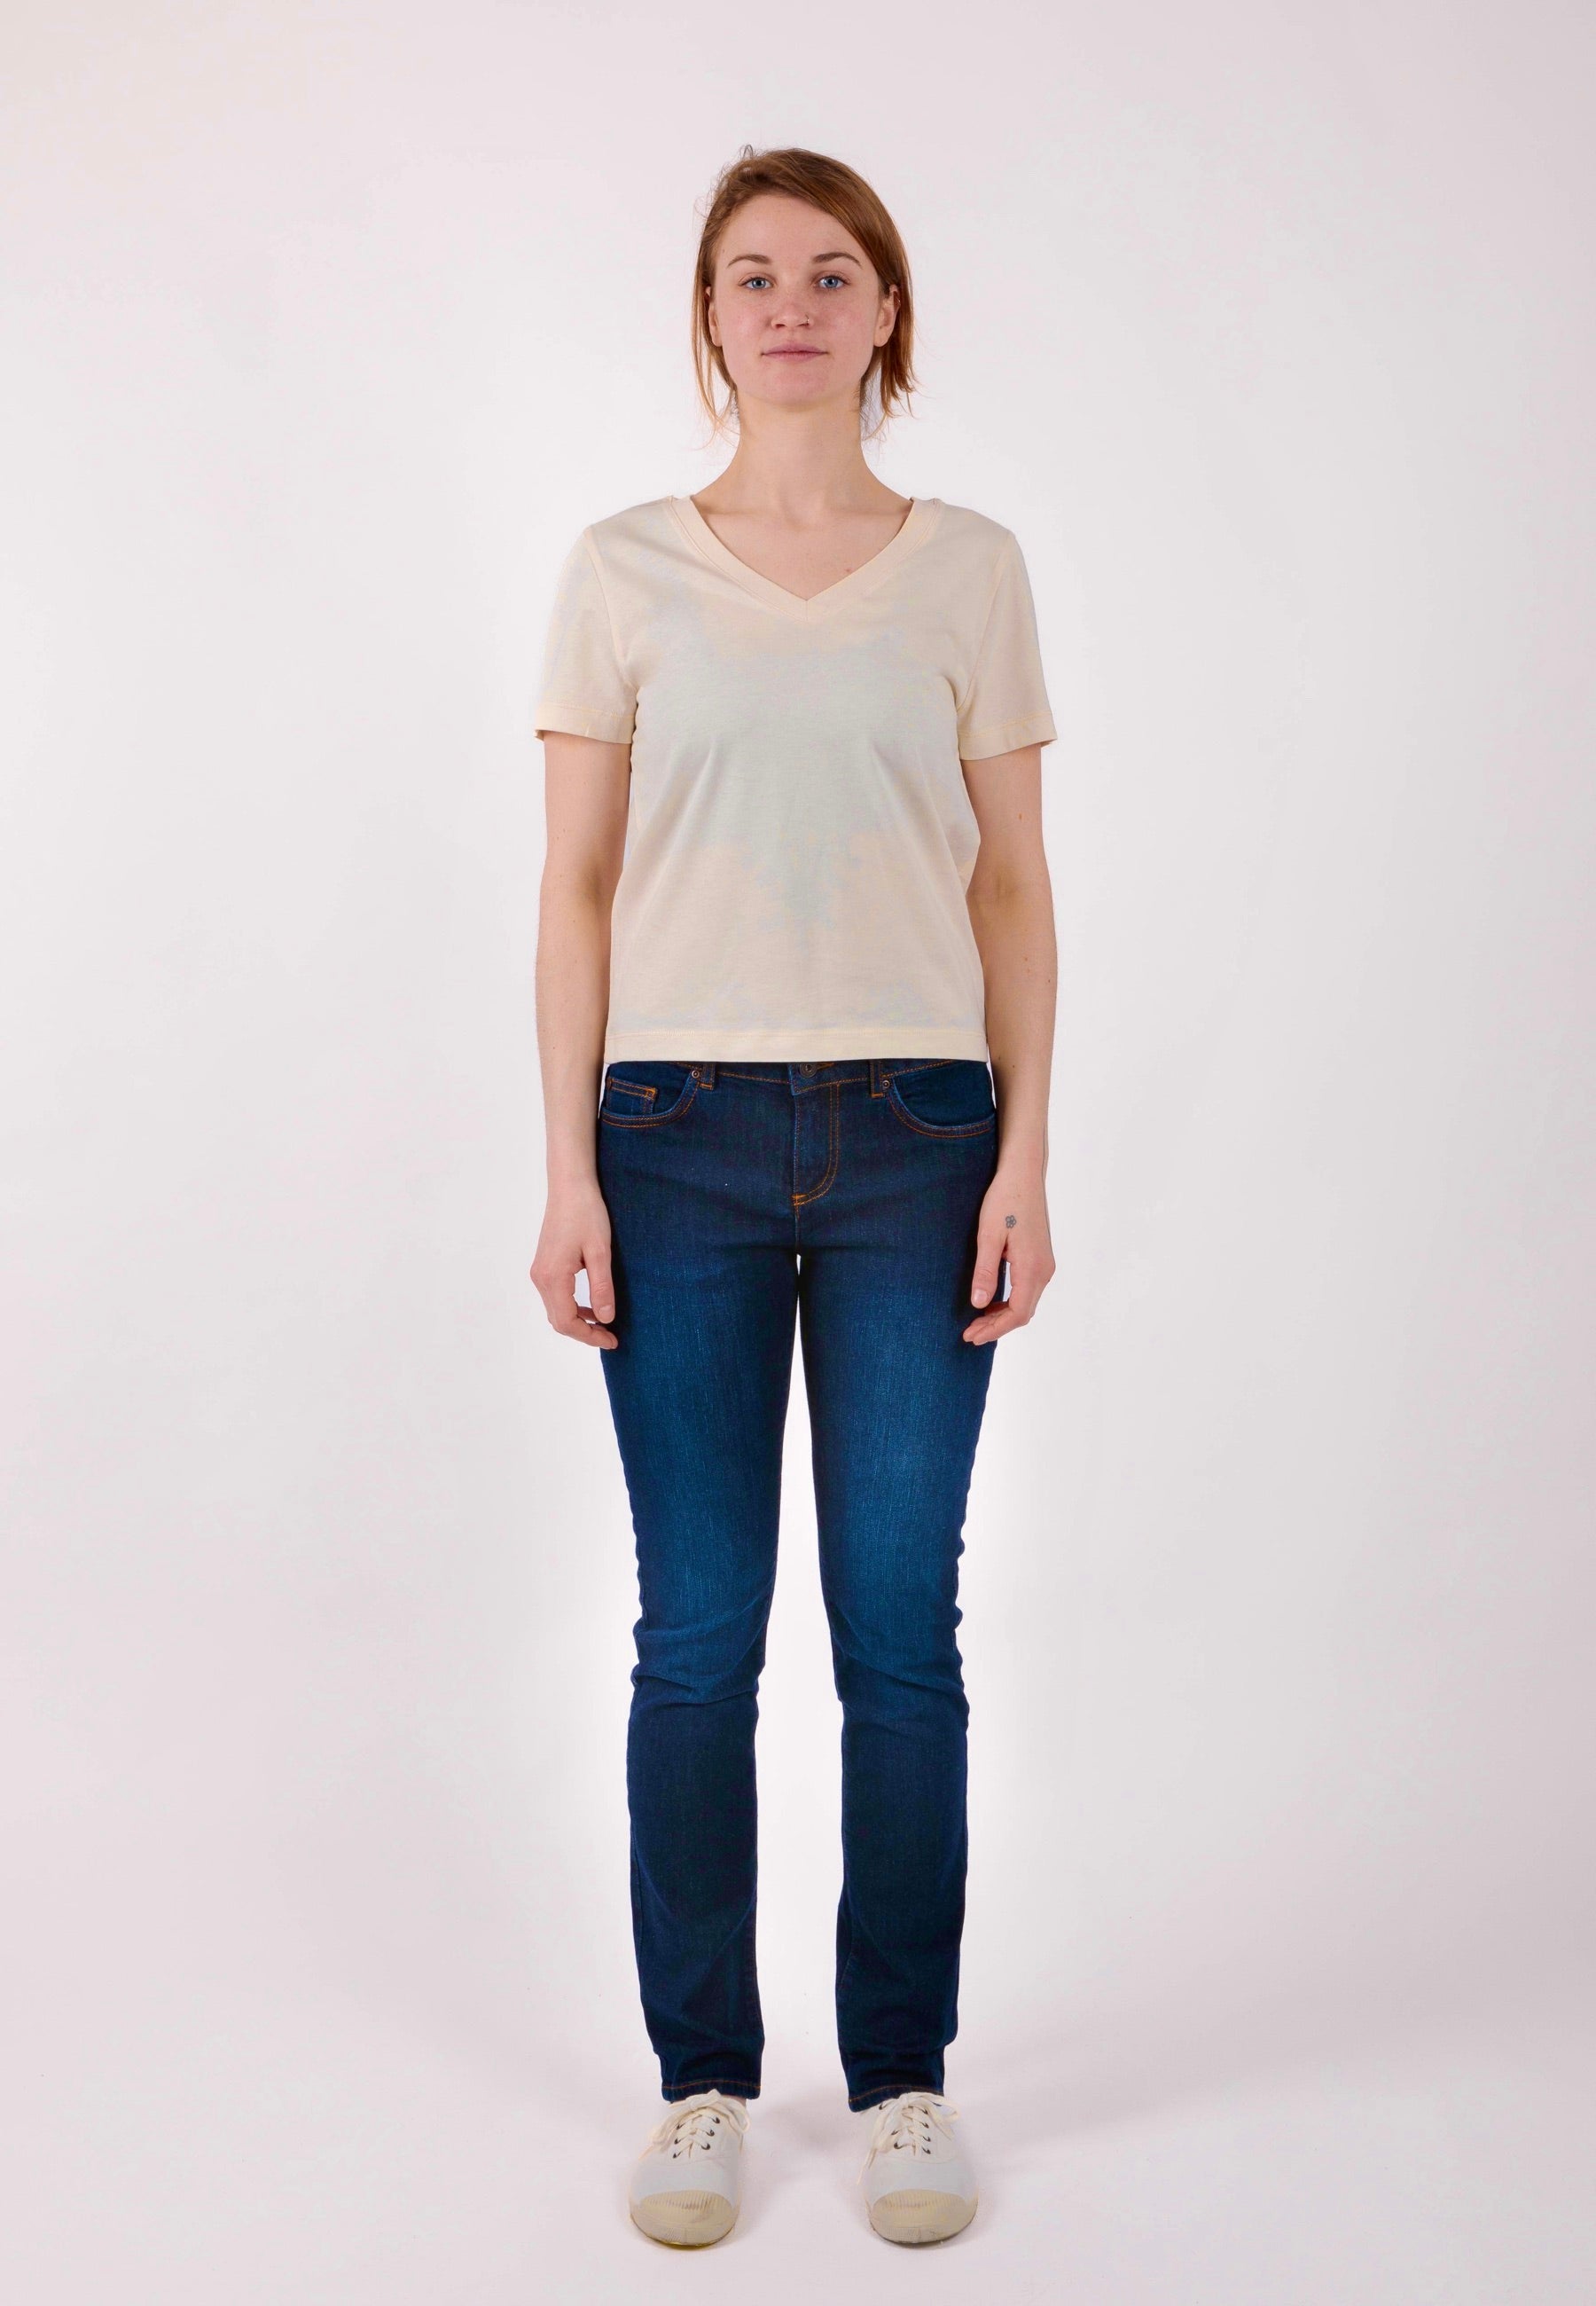 ISLA | Nachhaltiges Damen V-Shirt aus 100% Bio-Baumwolle